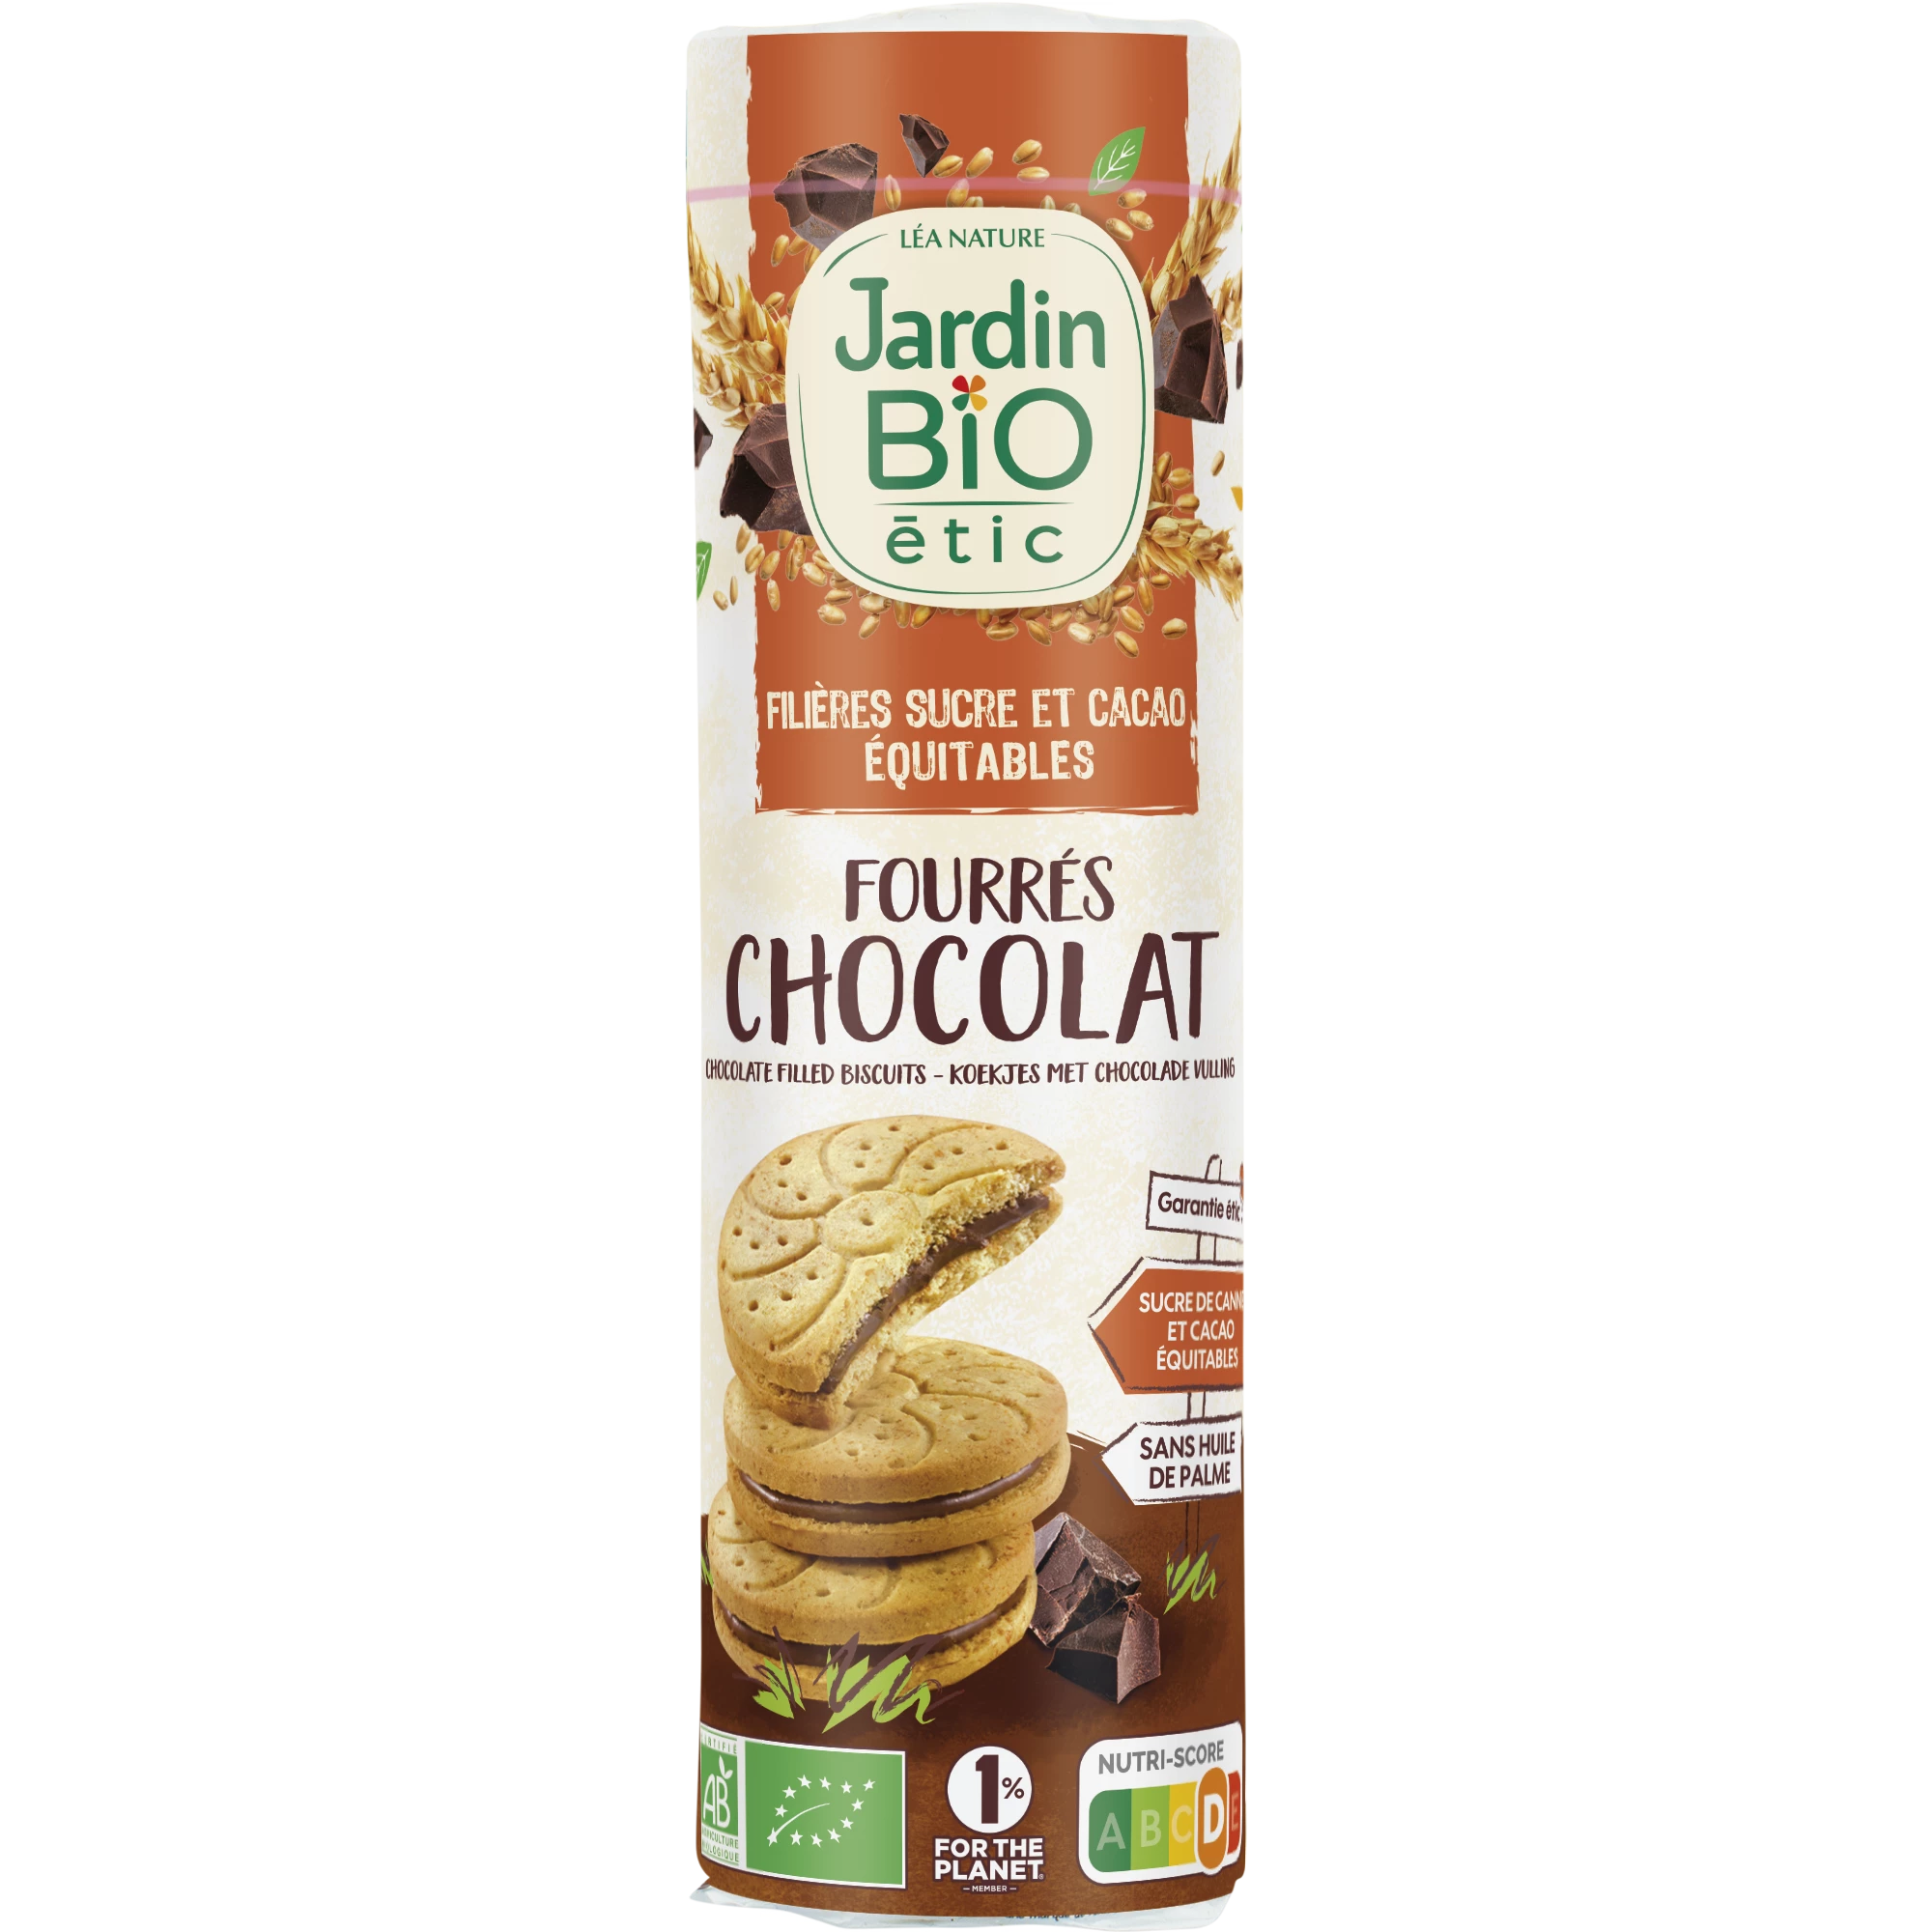 Biscotti ripieni al cioccolato, 300g, JARDIN Bio ETIC